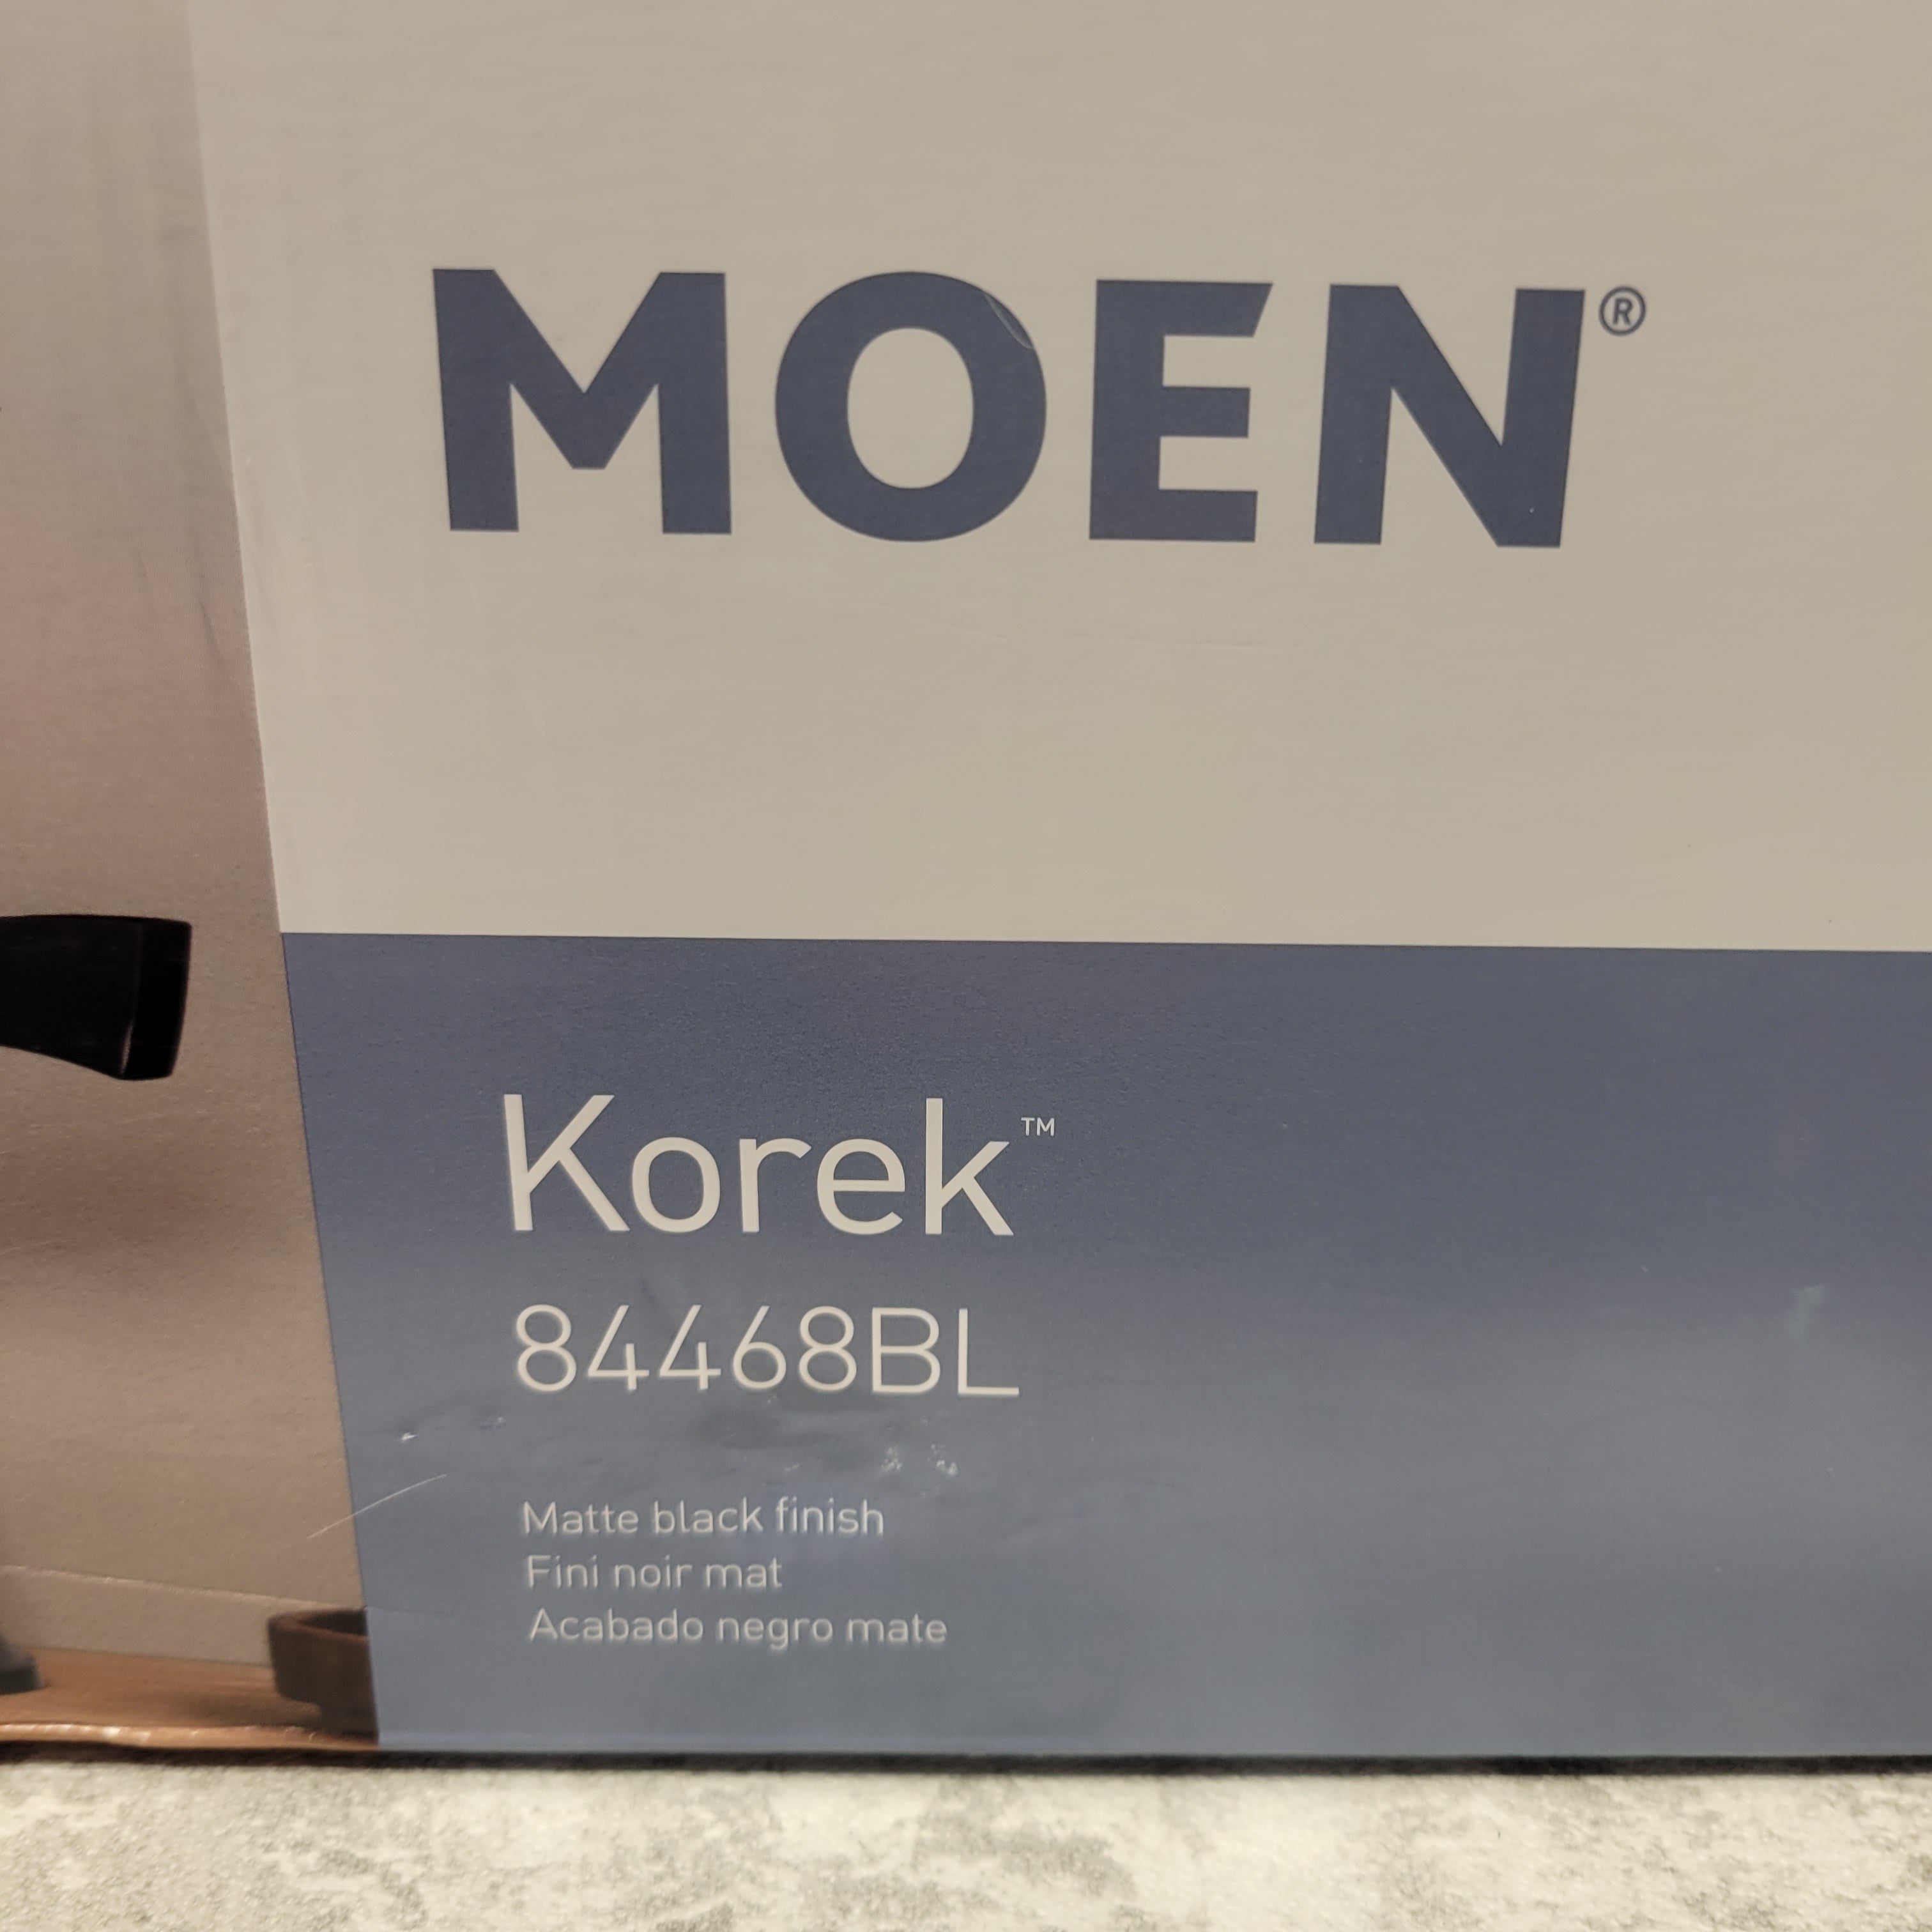 MOEN Korek 8 in. Widespread High-Arc Bathroom Faucet with Valve, Matte Black (7629454213358)